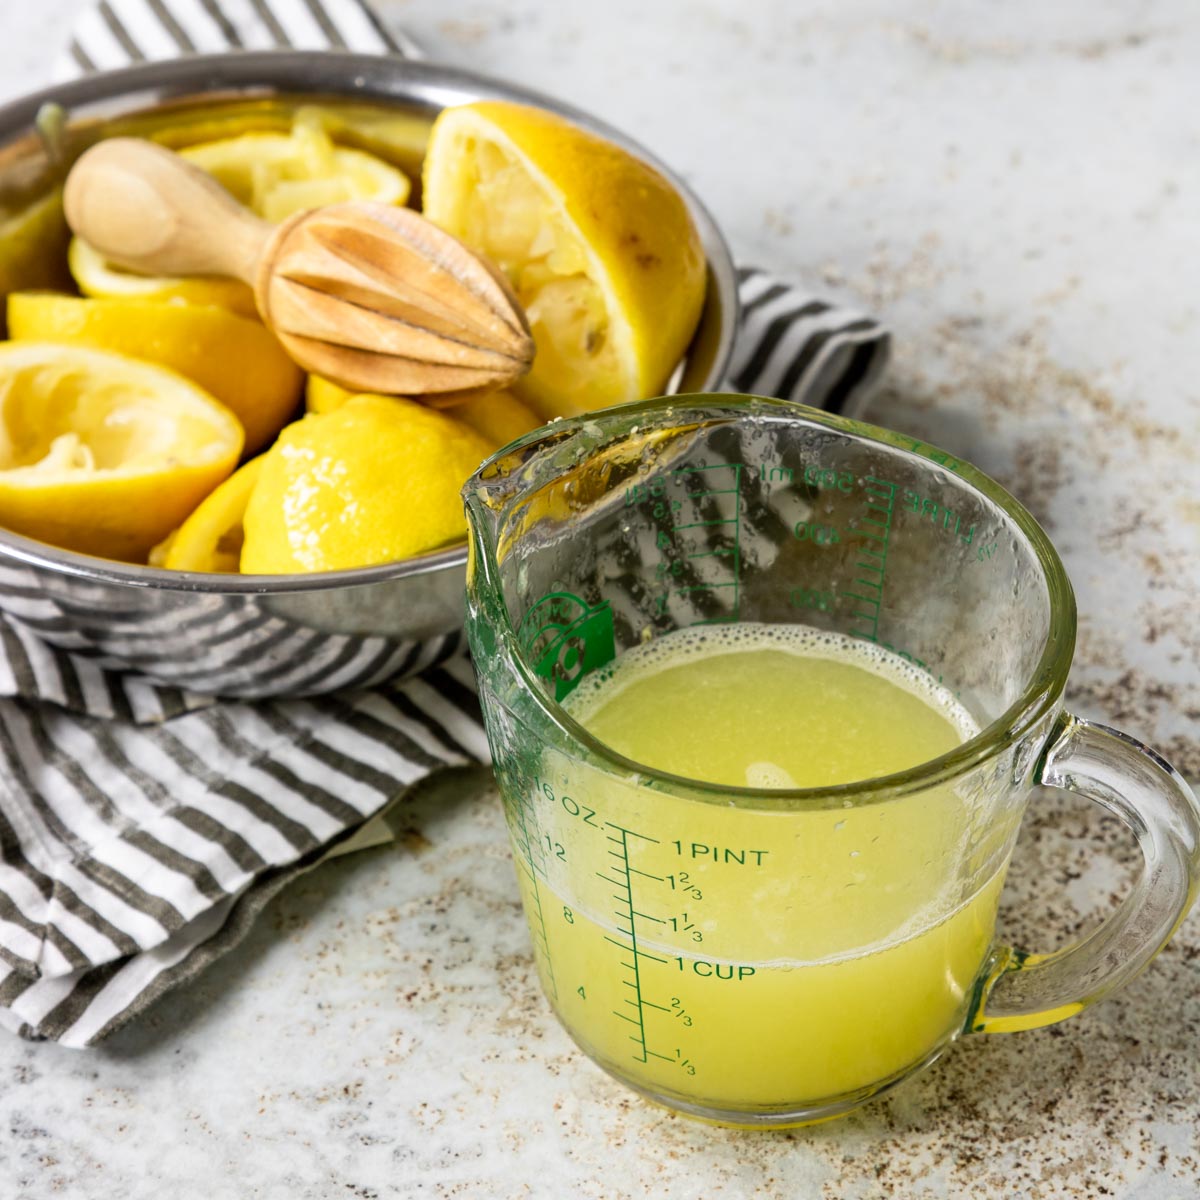 1 cup fresh squeezed lemon juice